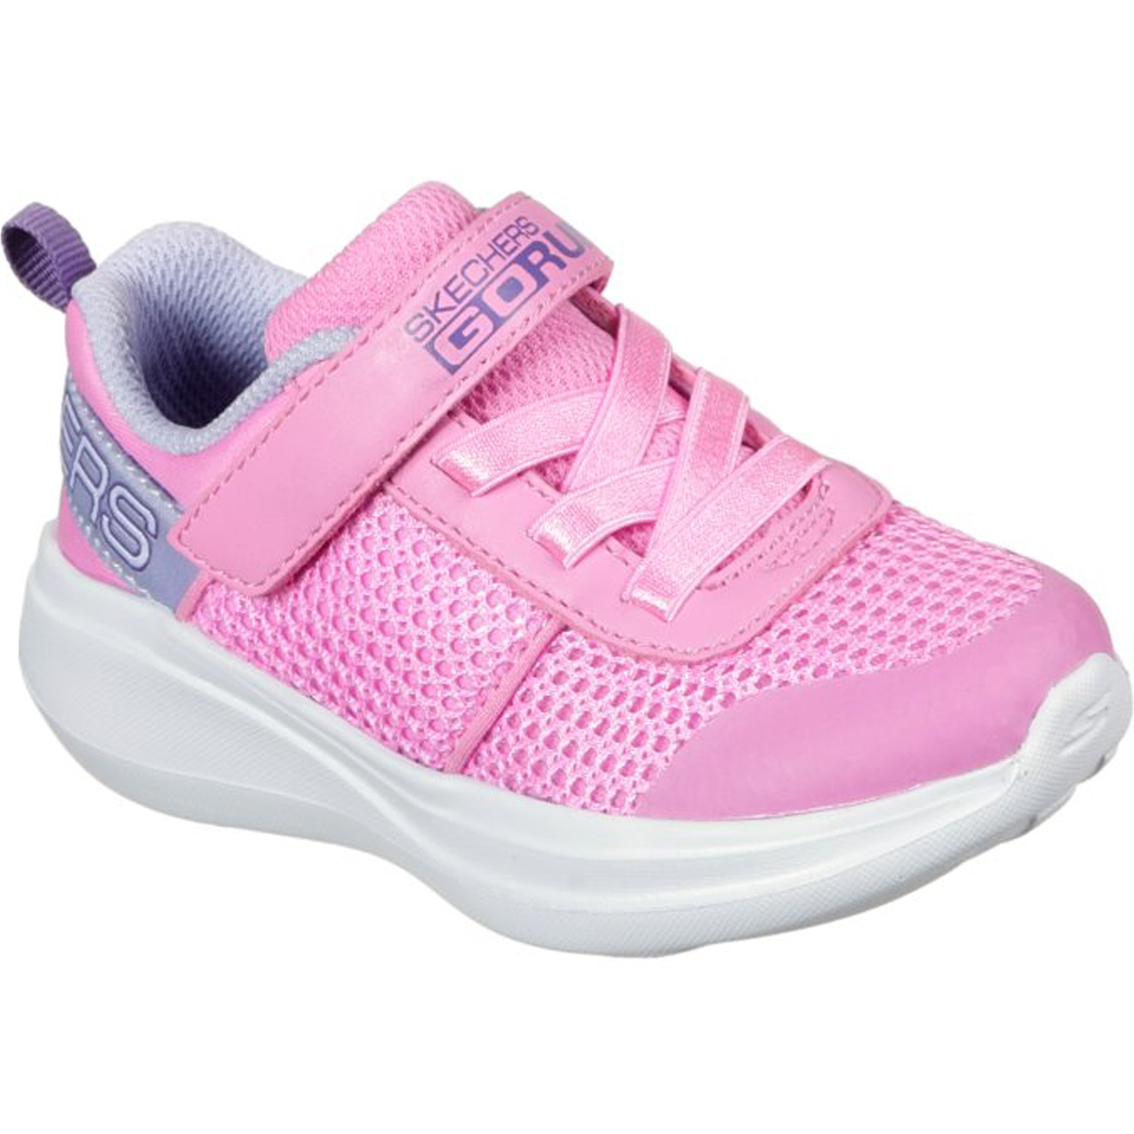 Skechers Toddler Girls Gorun Fast Viva Valor Sneakers | Children's ...